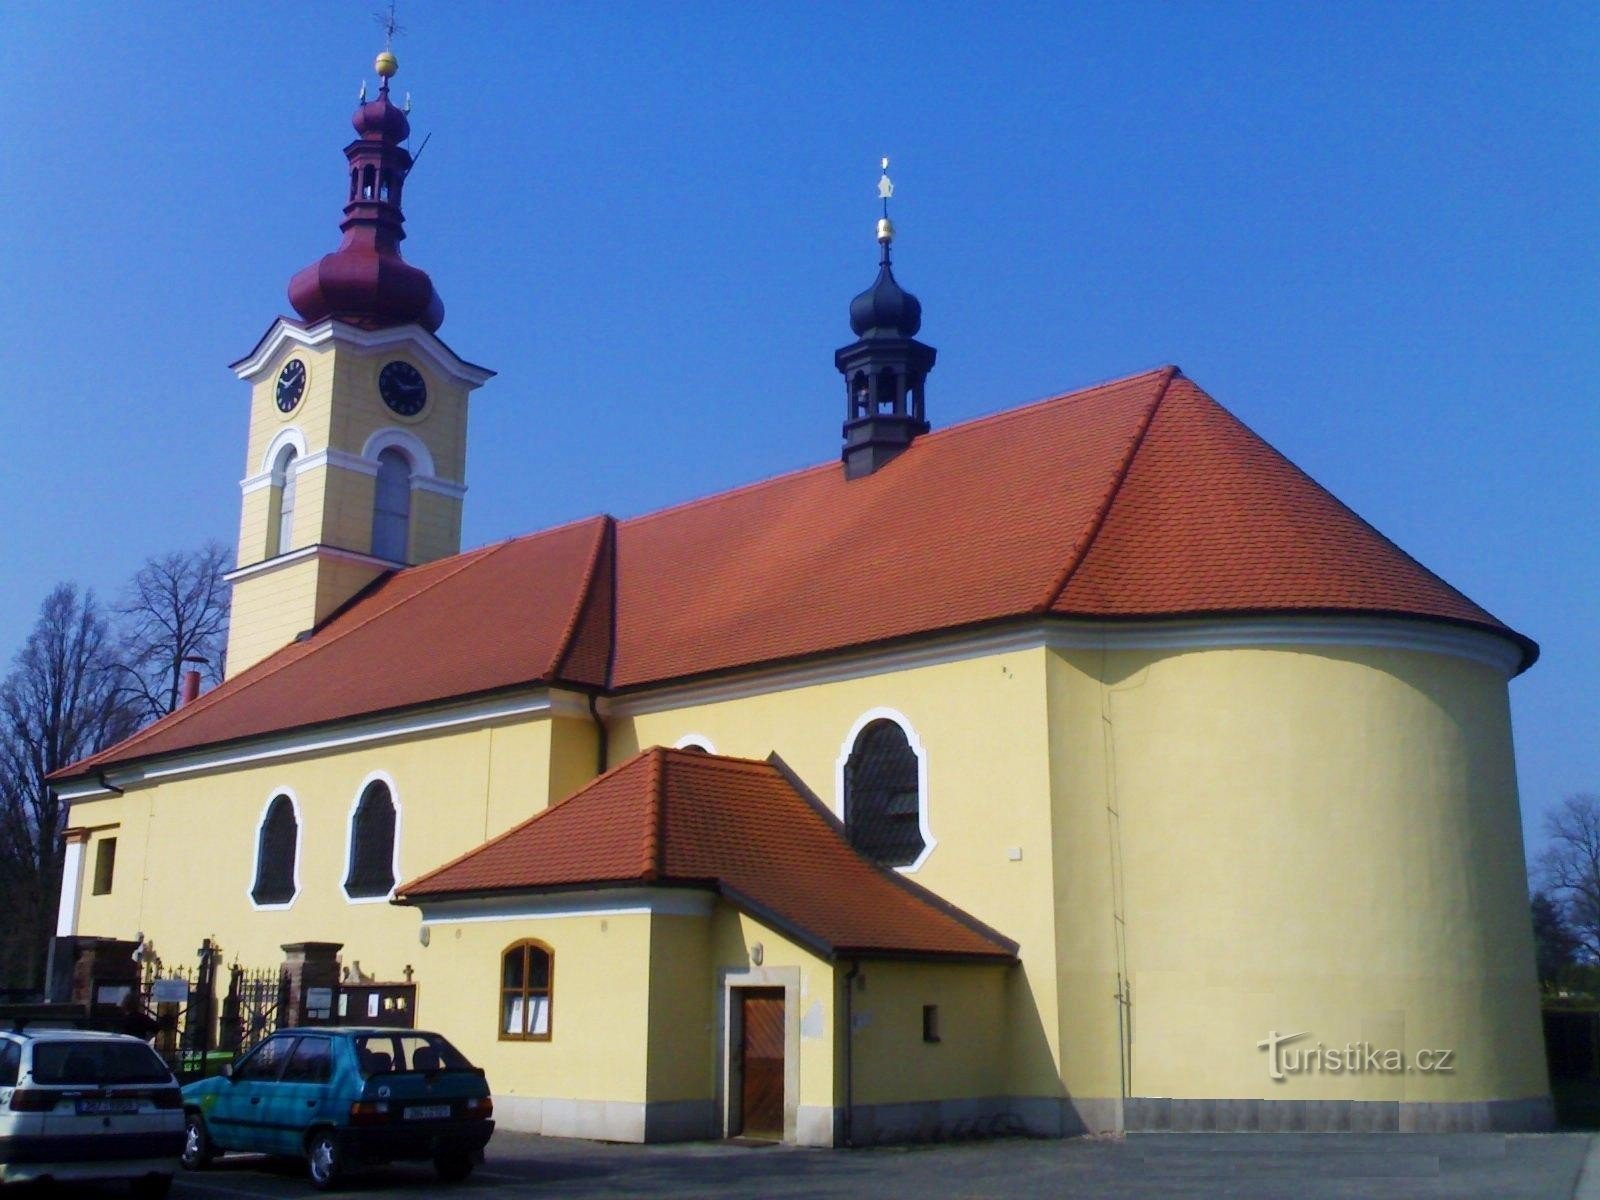 Поухов - церква св. Павло